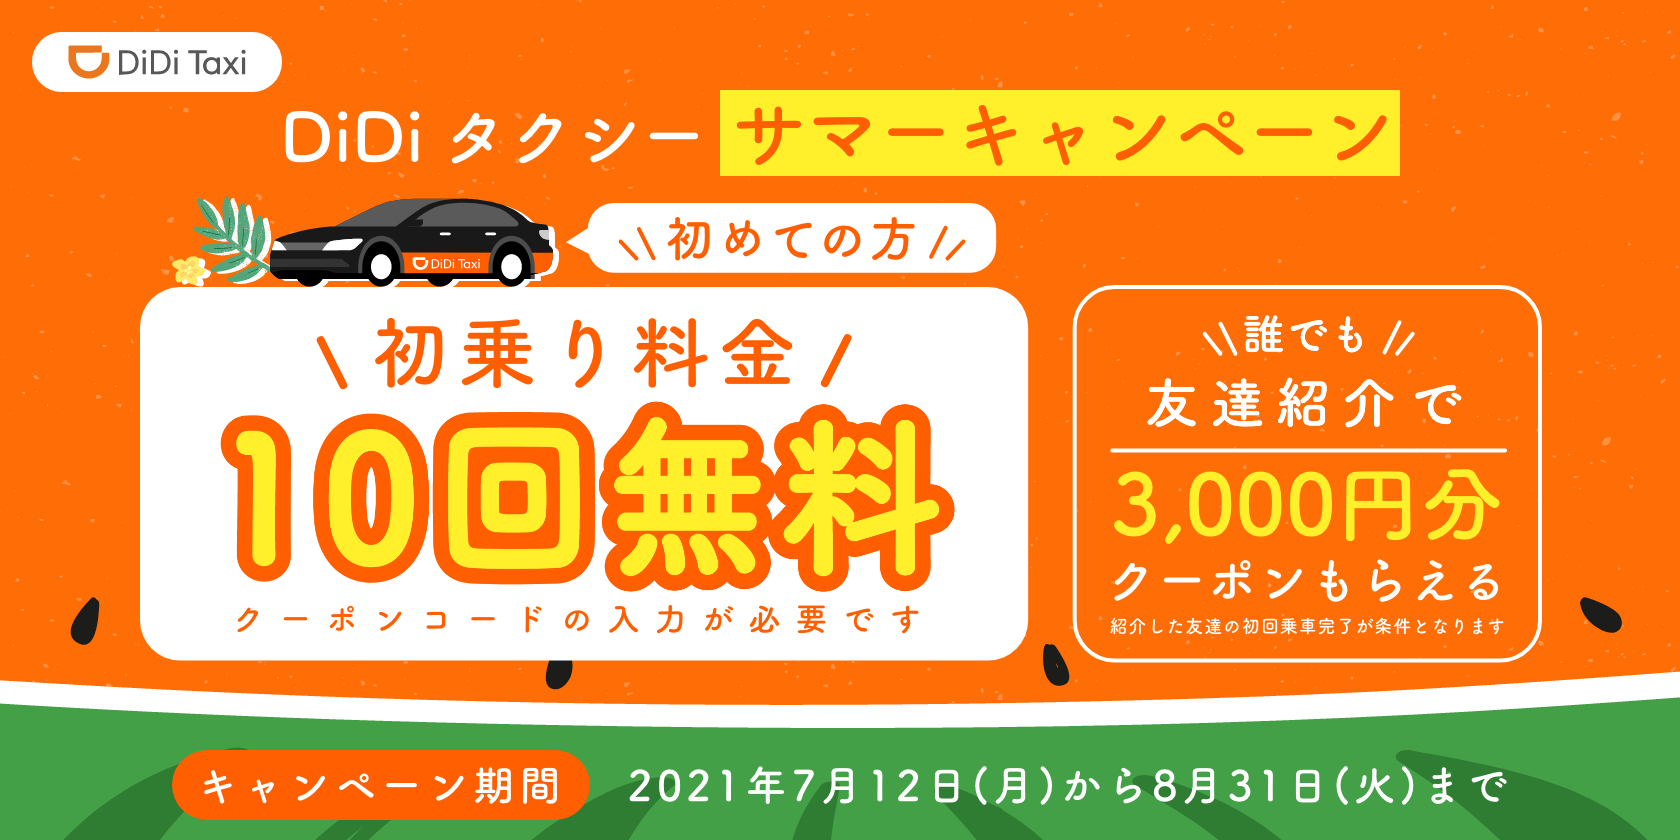 7月12日より Didiタクシー サマーキャンペーン を開催 Didiモビリティジャパン株式会社のプレスリリース